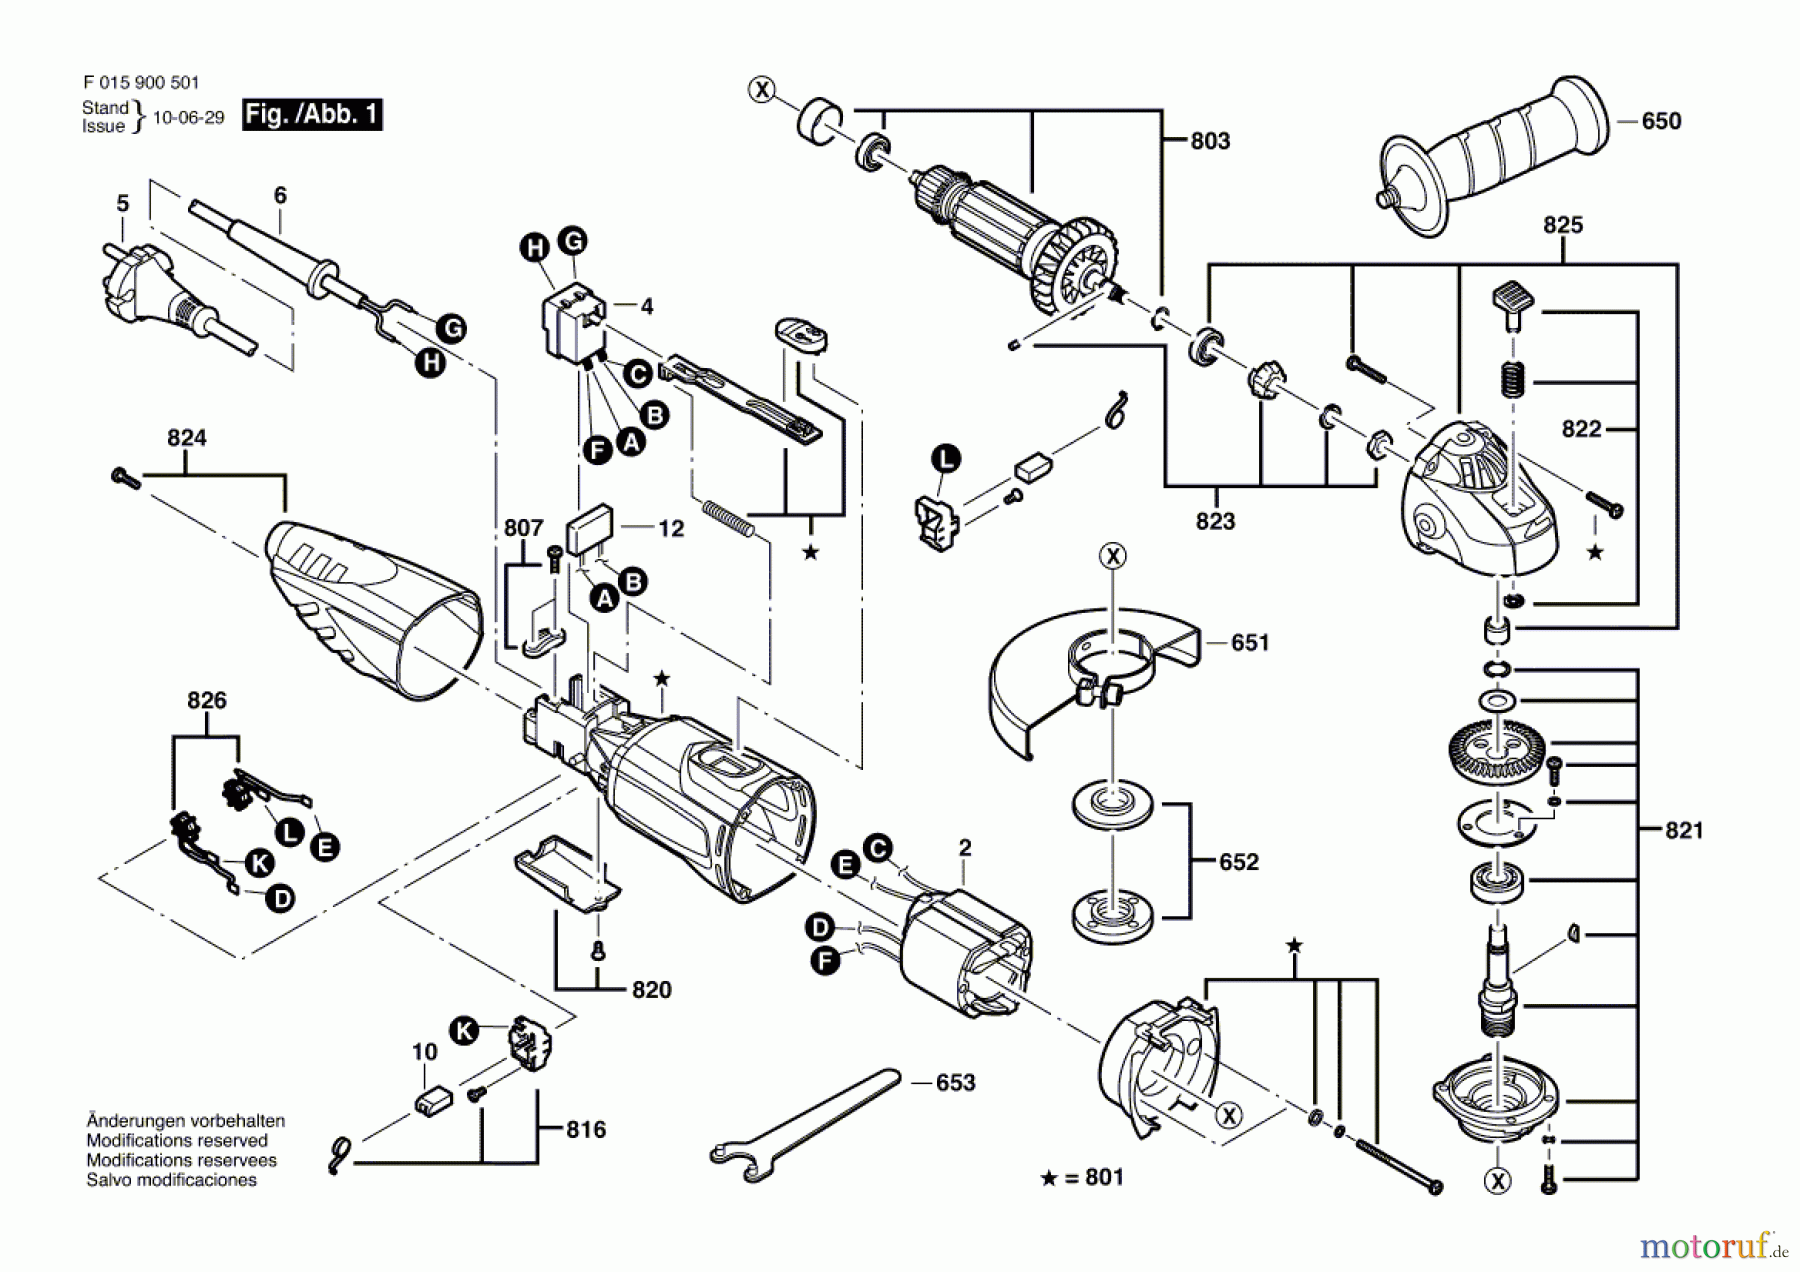  Bosch Werkzeug Winkelschleifer 9005 Seite 1